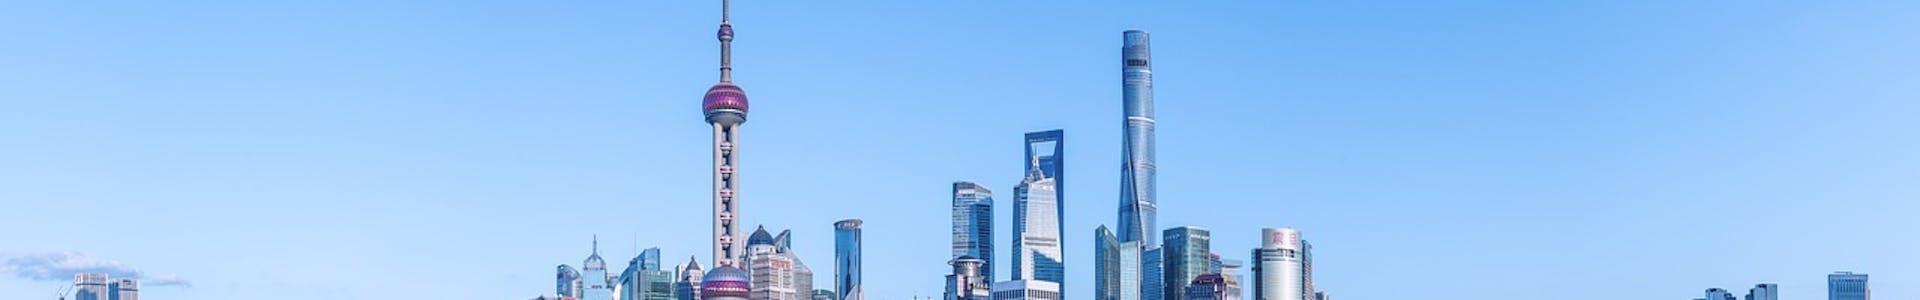 Shanghai skyline - LCG